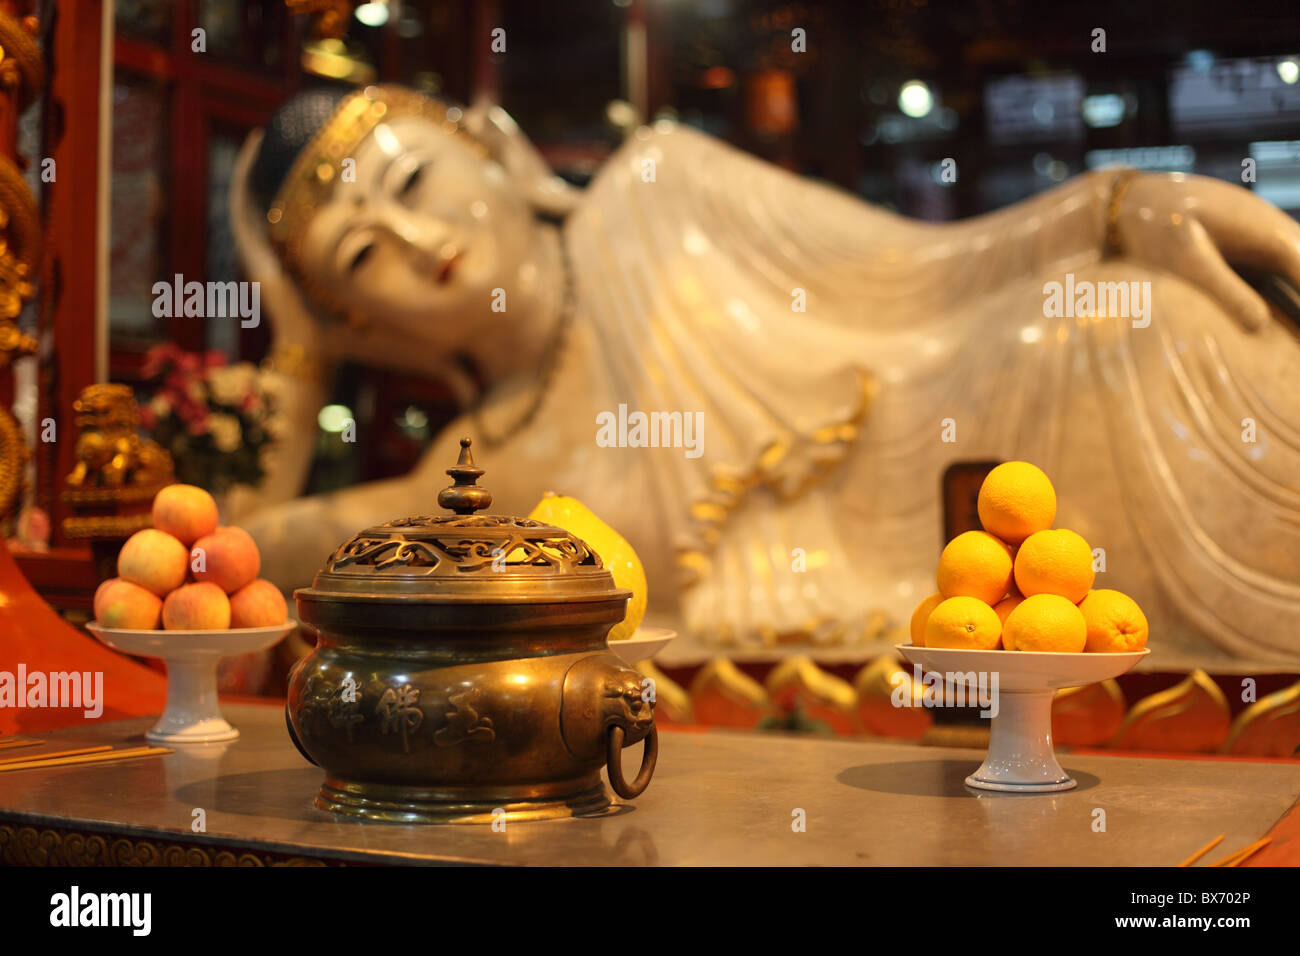 Buddha statue at Jade Buddha temple in Shanghai, China Stock Photo